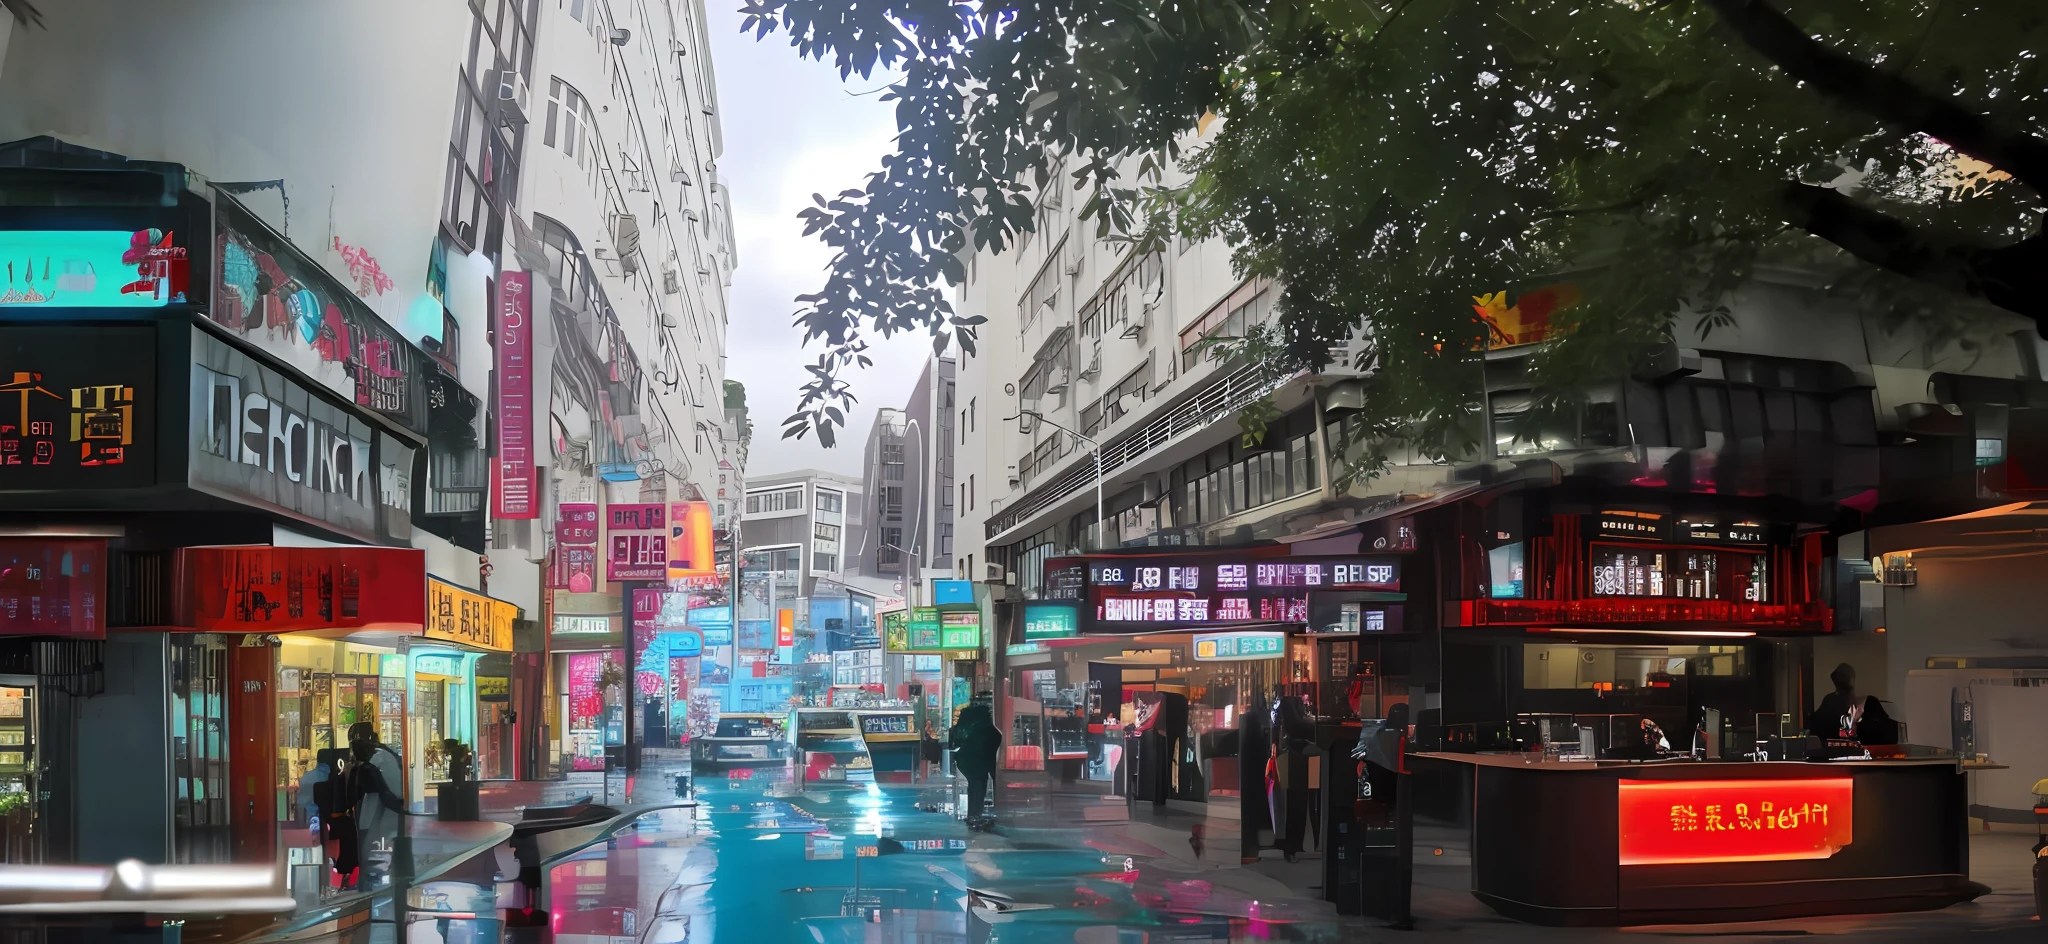 홍콩 스타일 바,홍콩의 거리,오픈 바,네온 불빛,대형 간판,우아함,고급,맛이 있다,극도로 높은 디테일,따뜻하고 따뜻한 빛